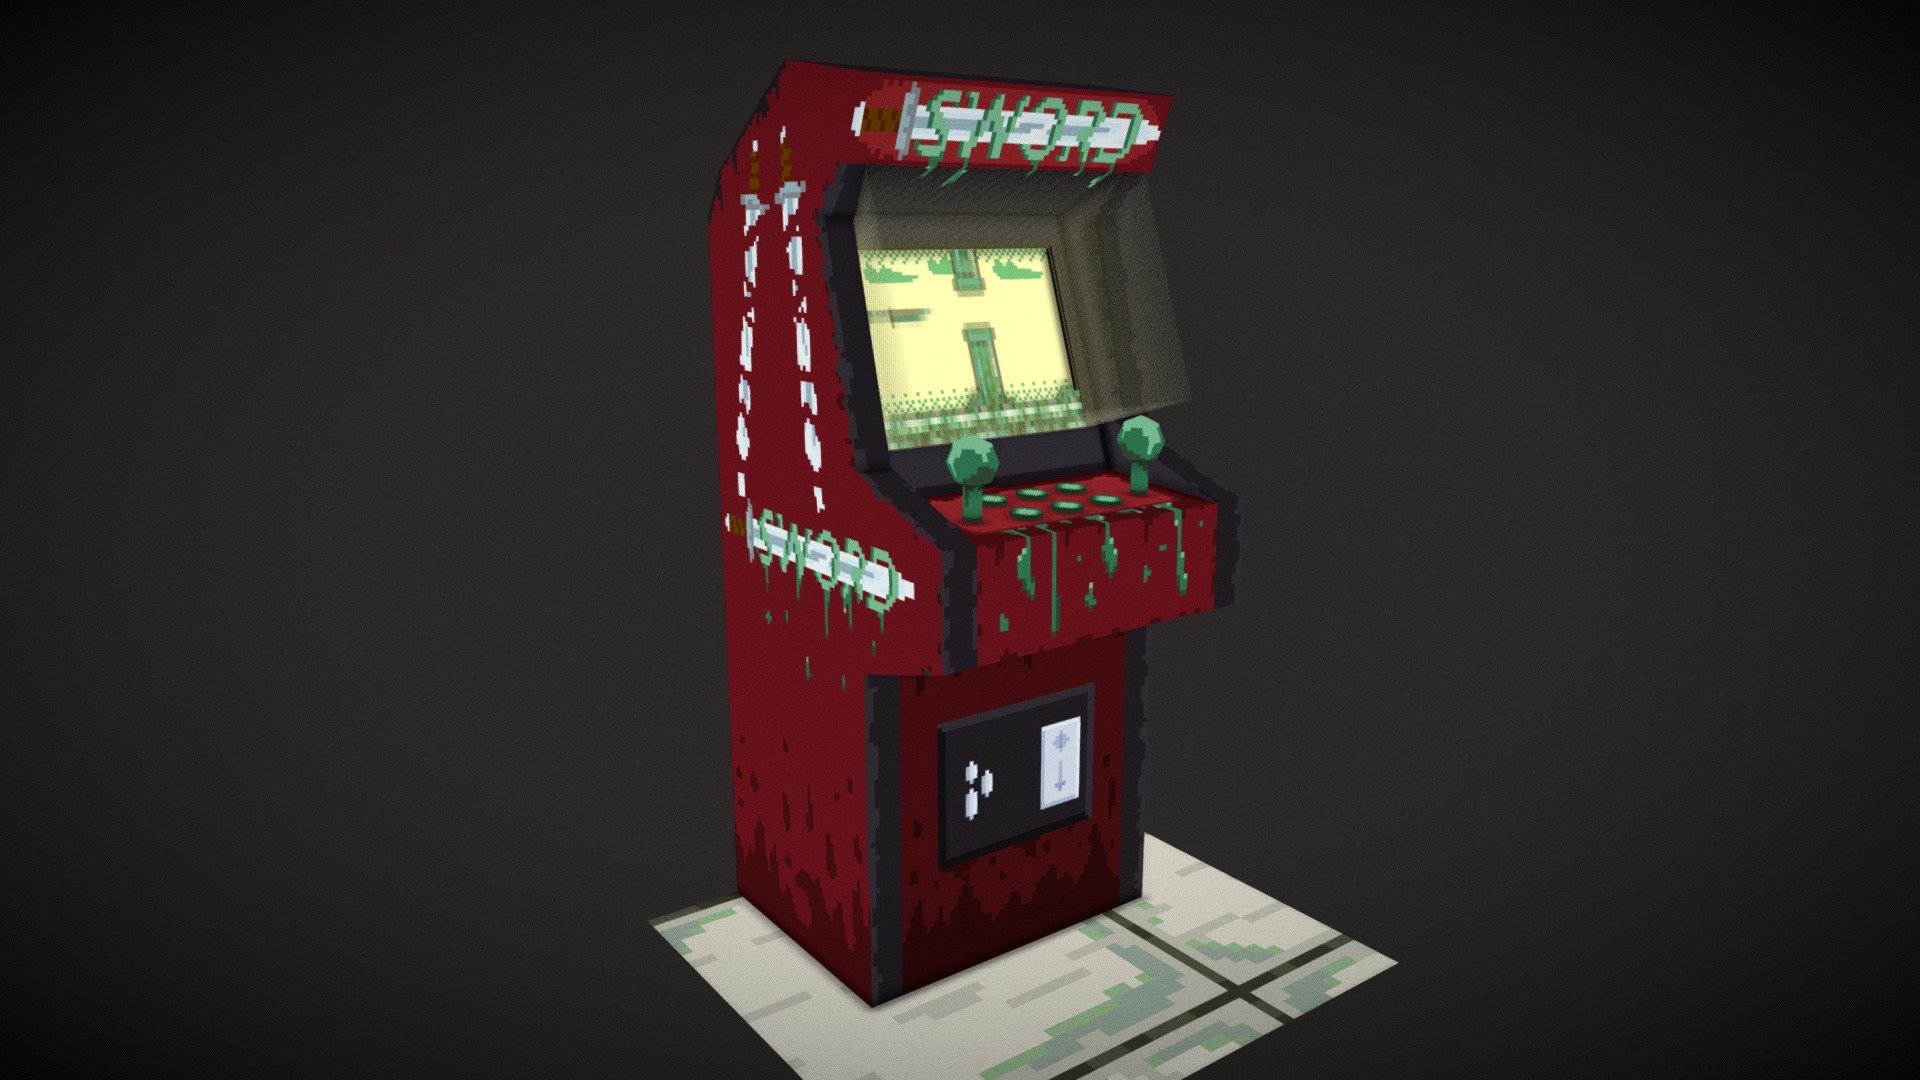 ArtStation - Arcade Pixel art